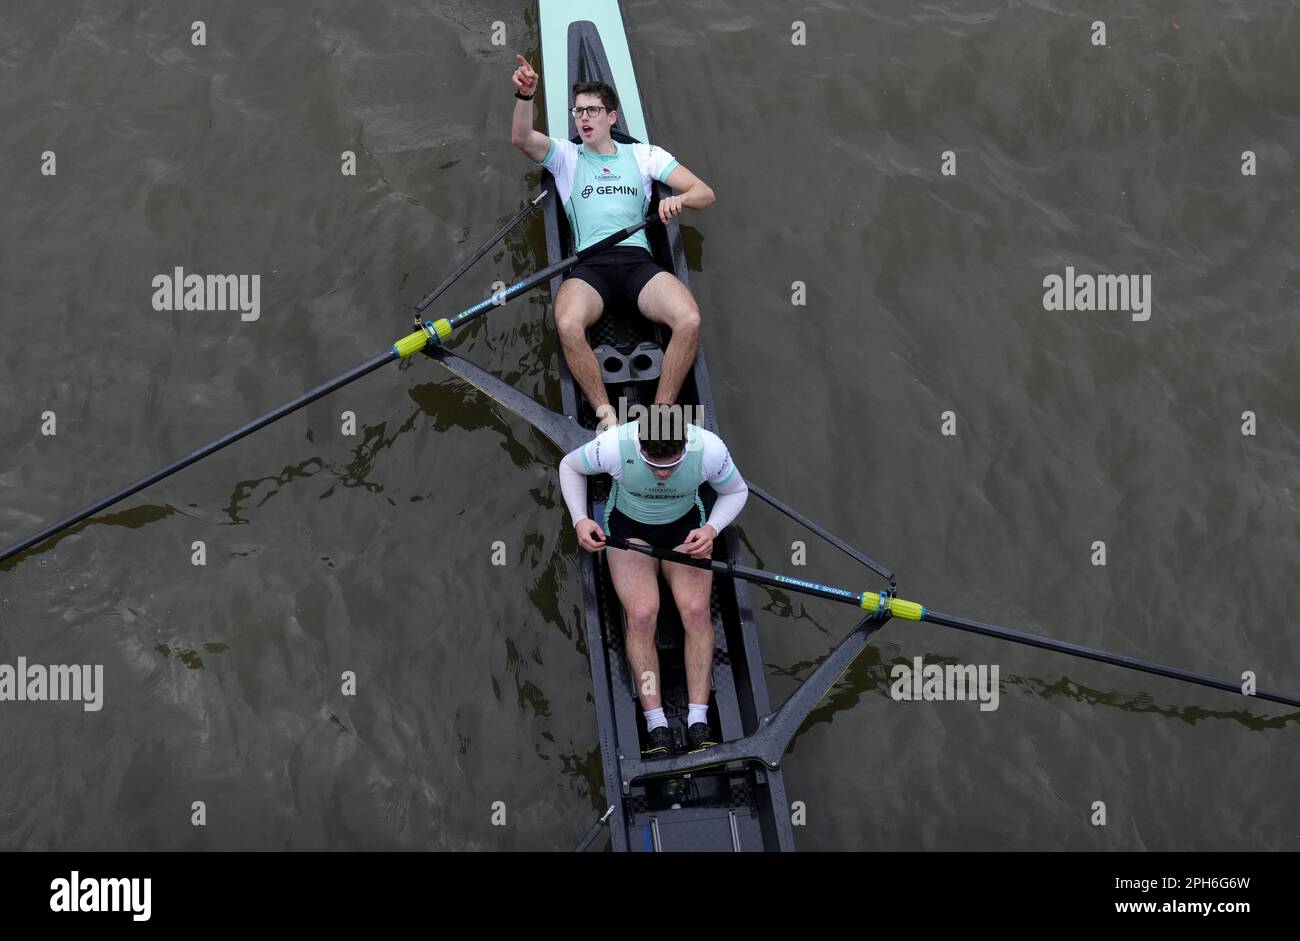 L'equipaggio di Cambridge festeggia la vittoria dopo la gara maschile durante la Gemini Boat Race 2023 sul Tamigi, Londra. Data immagine: Domenica 26 marzo 2023. Foto Stock